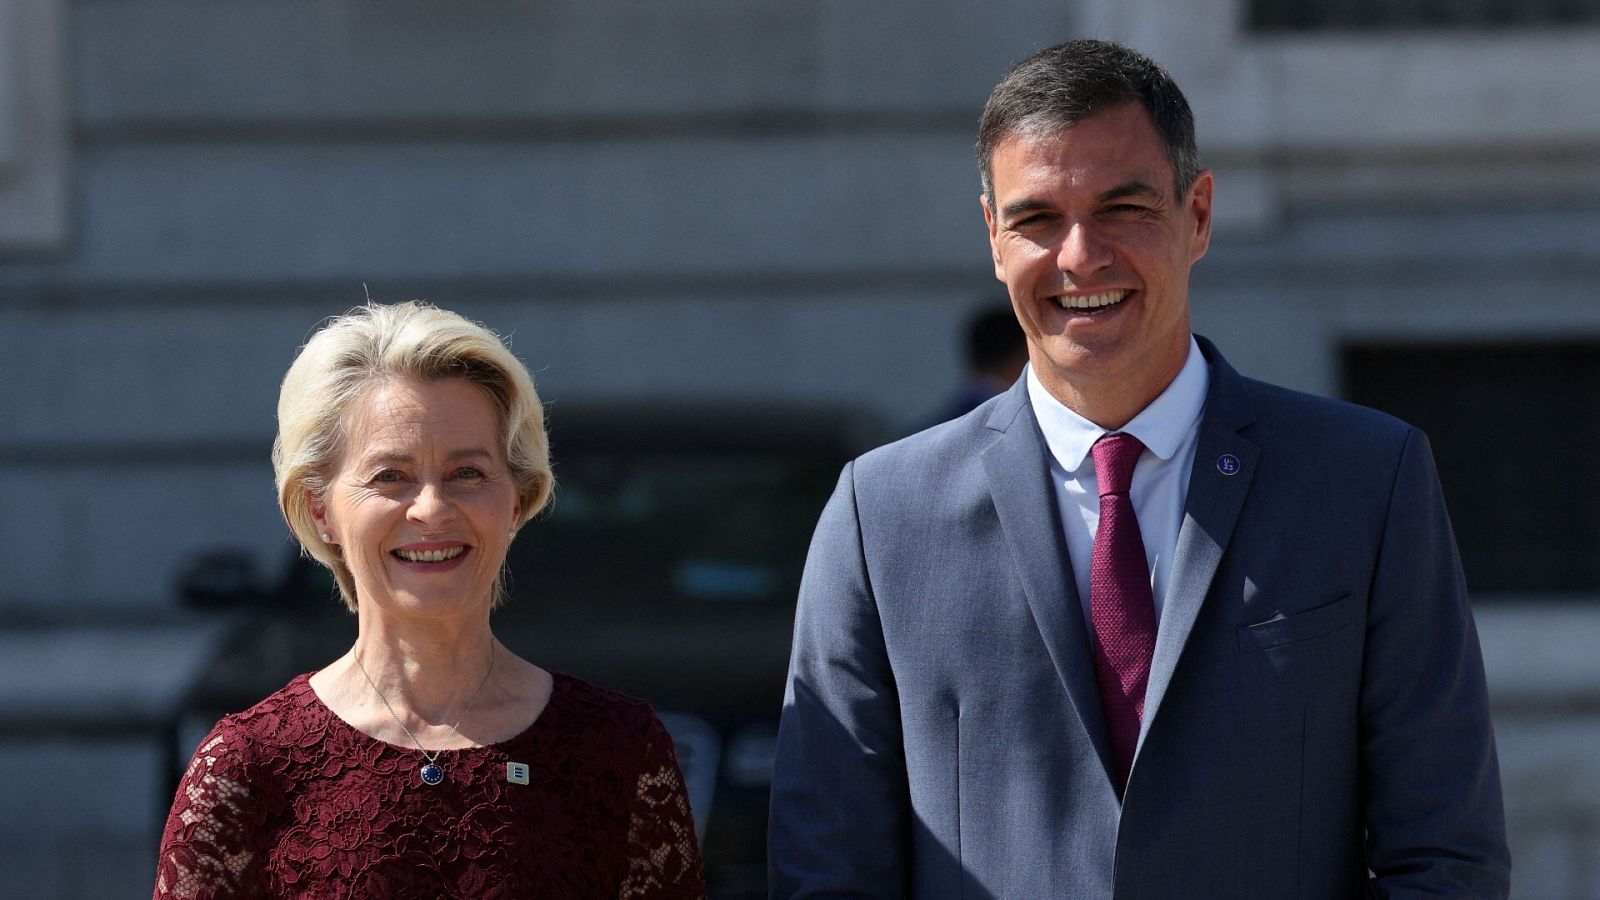 El presidente del Gobierno, Pedro Sánchez, recibe a la presidenta de la Comisión Europea, Ursula von der Leyen, en el Palacio Real de Madrid